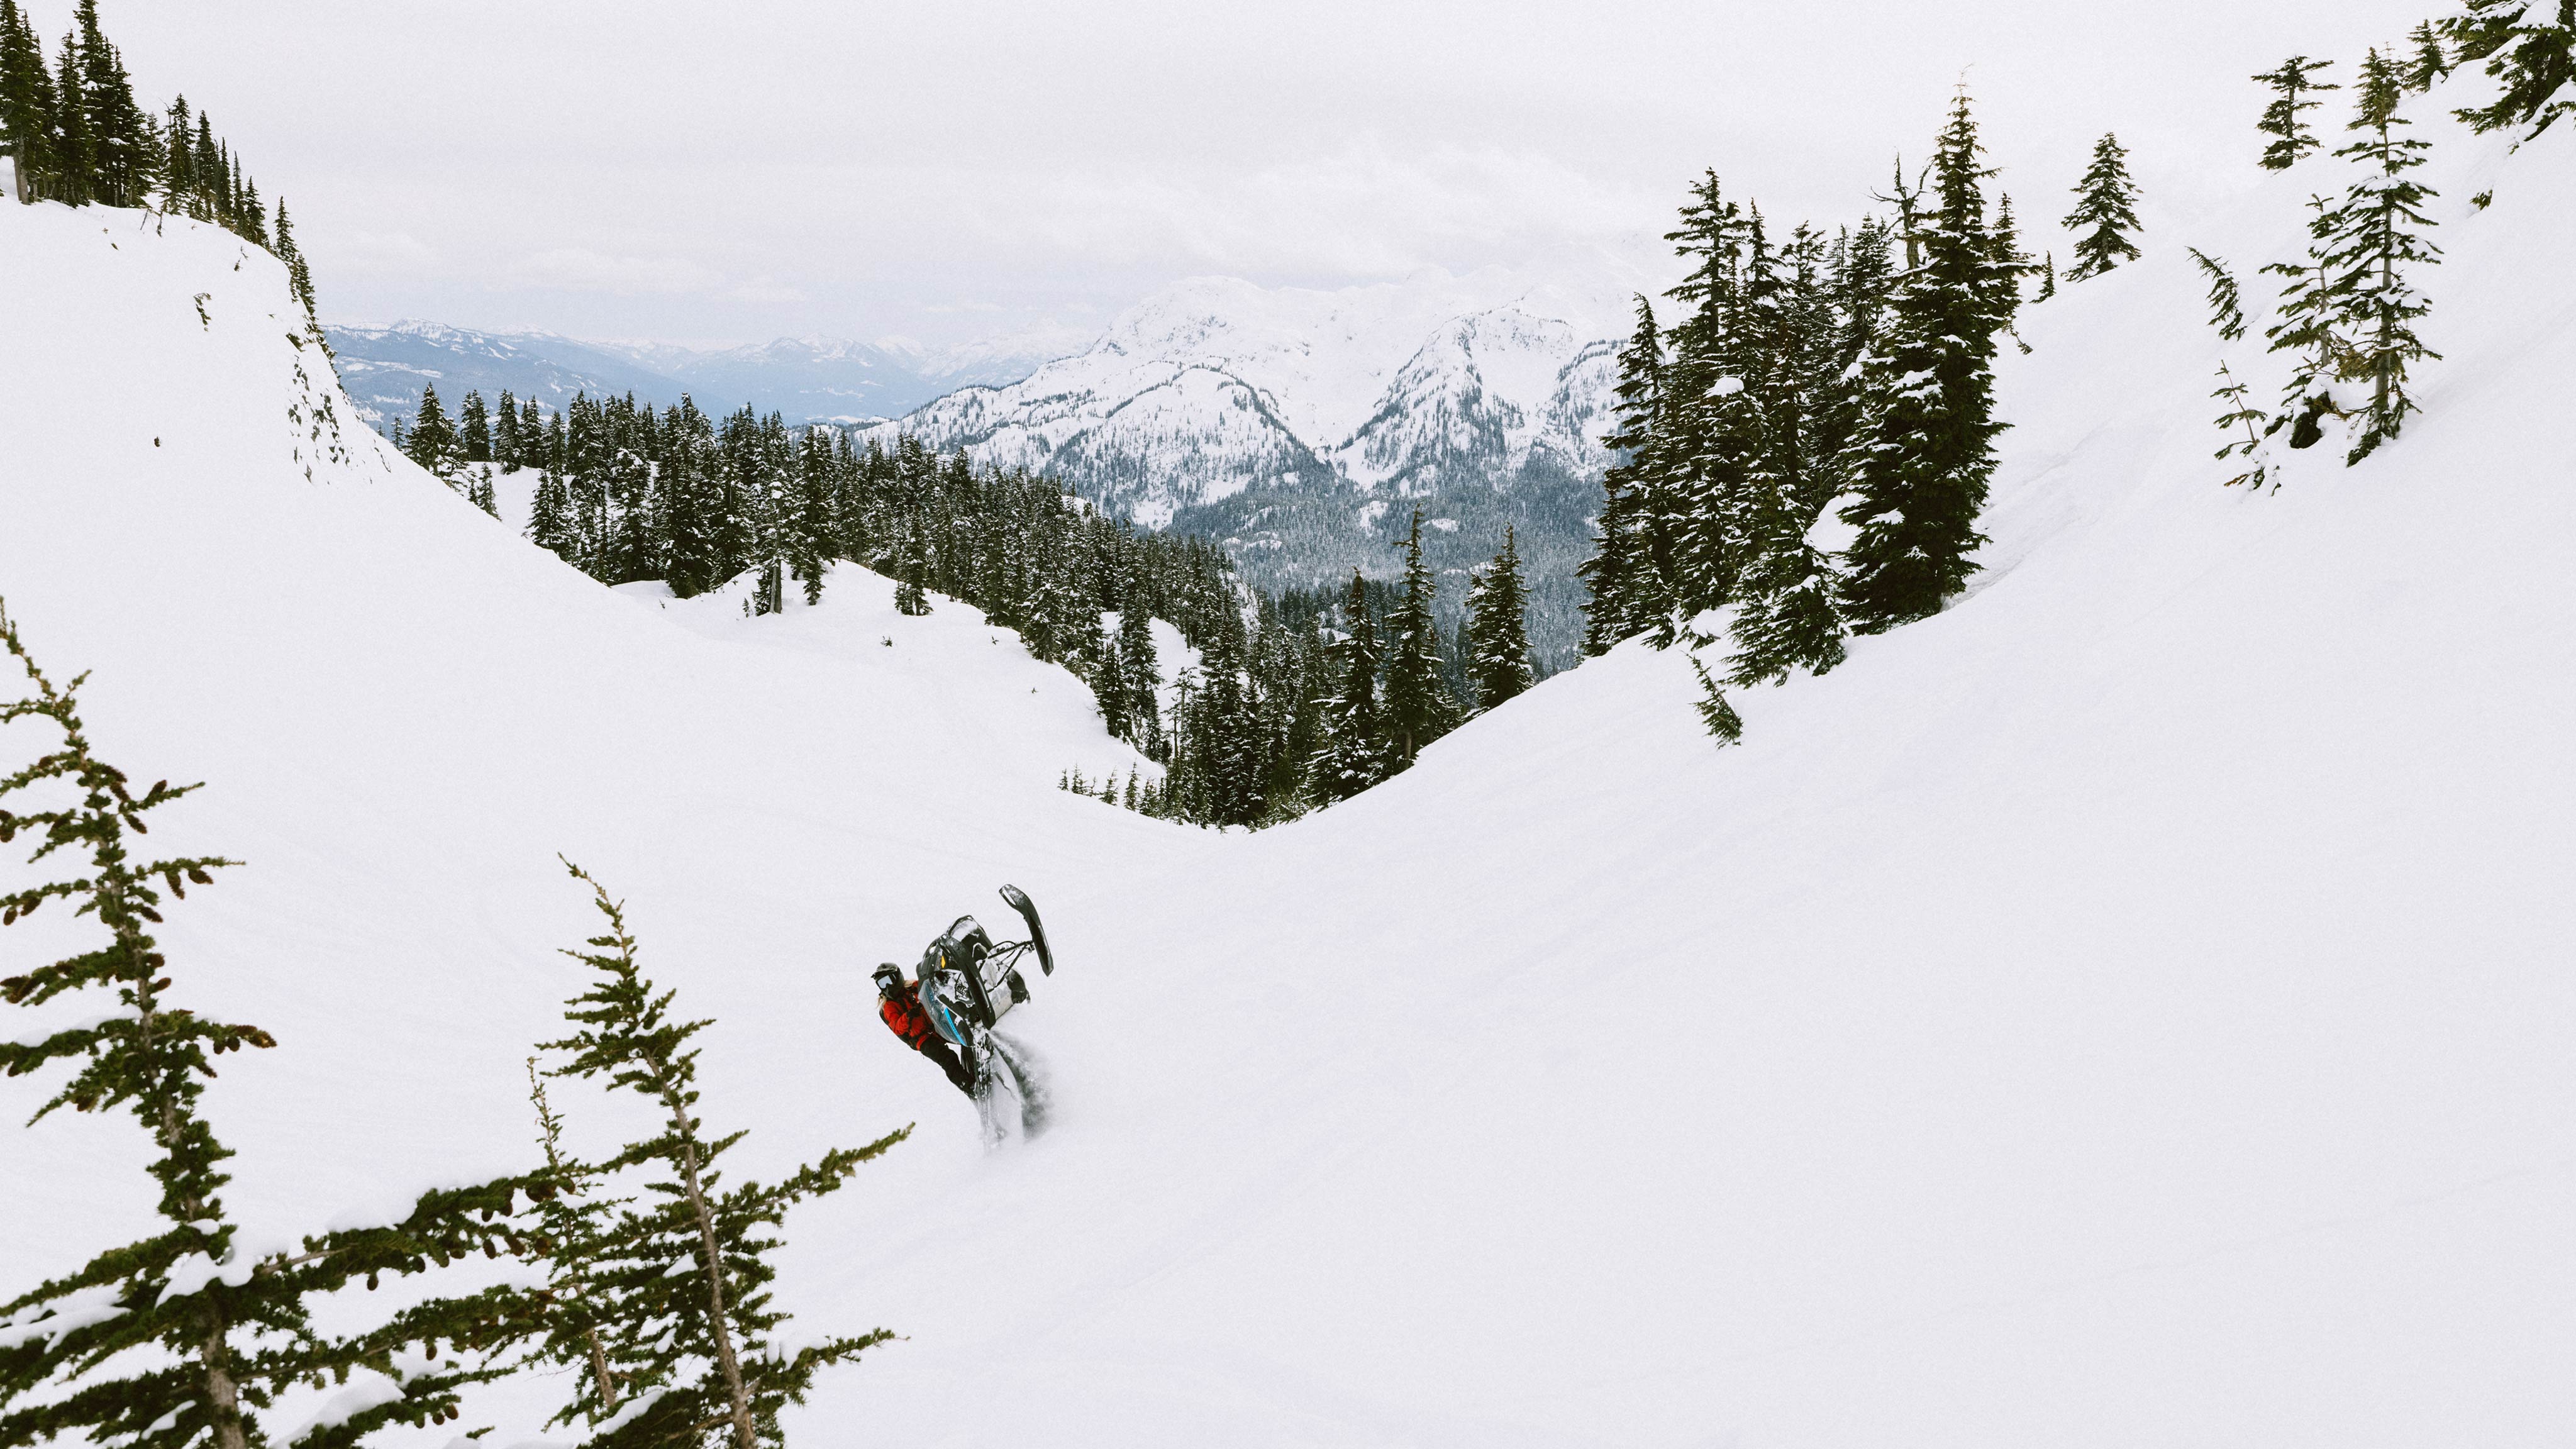 Ski-Doo Ambassadori Ella Snäll ajamassa BC vuorilla